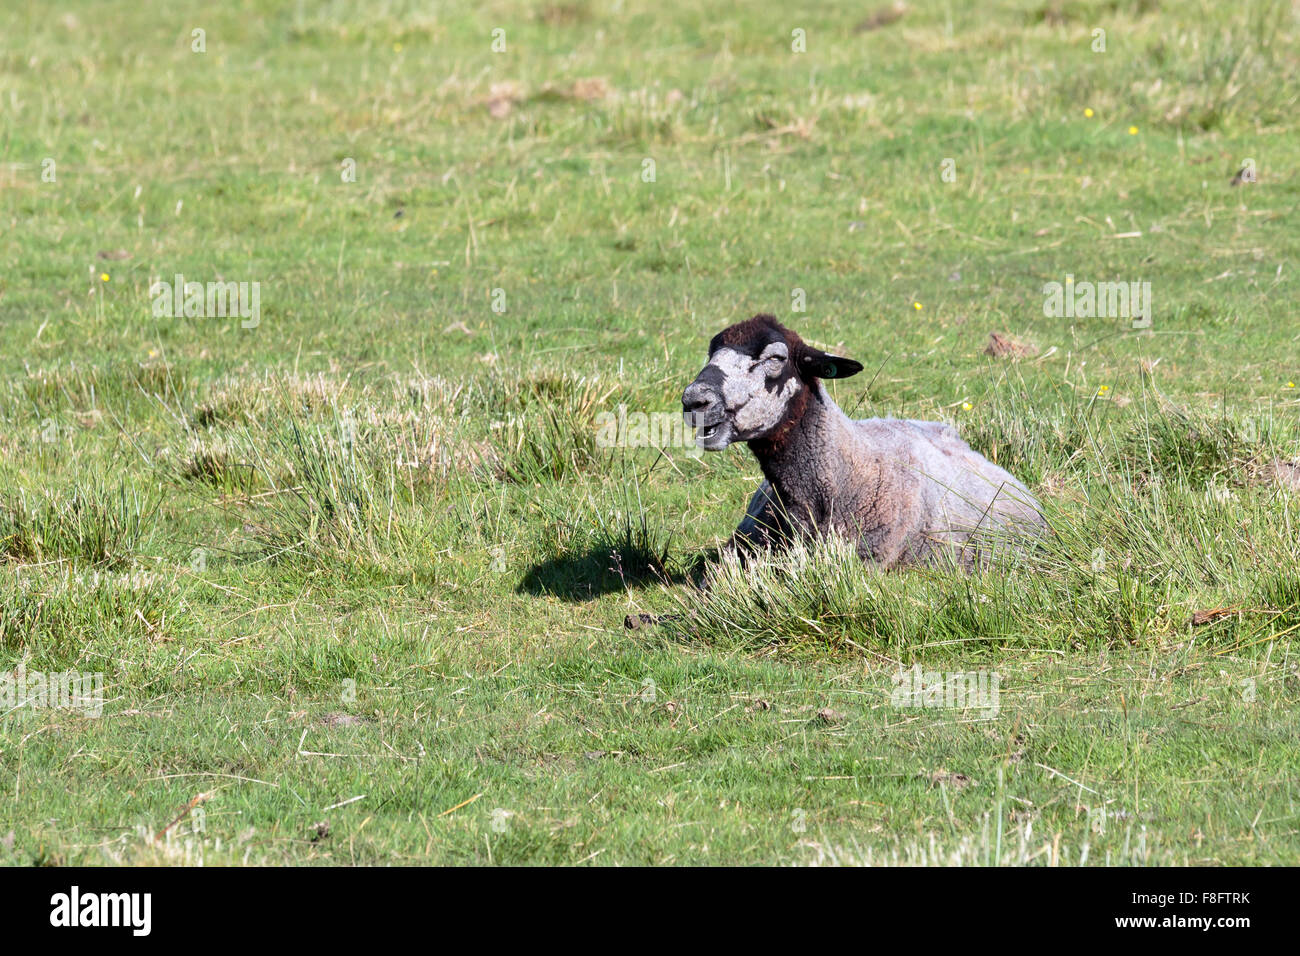 Sonnendurchflutetes grau und braun Schaf liegend auf einer schottischen Wiese Stockfoto